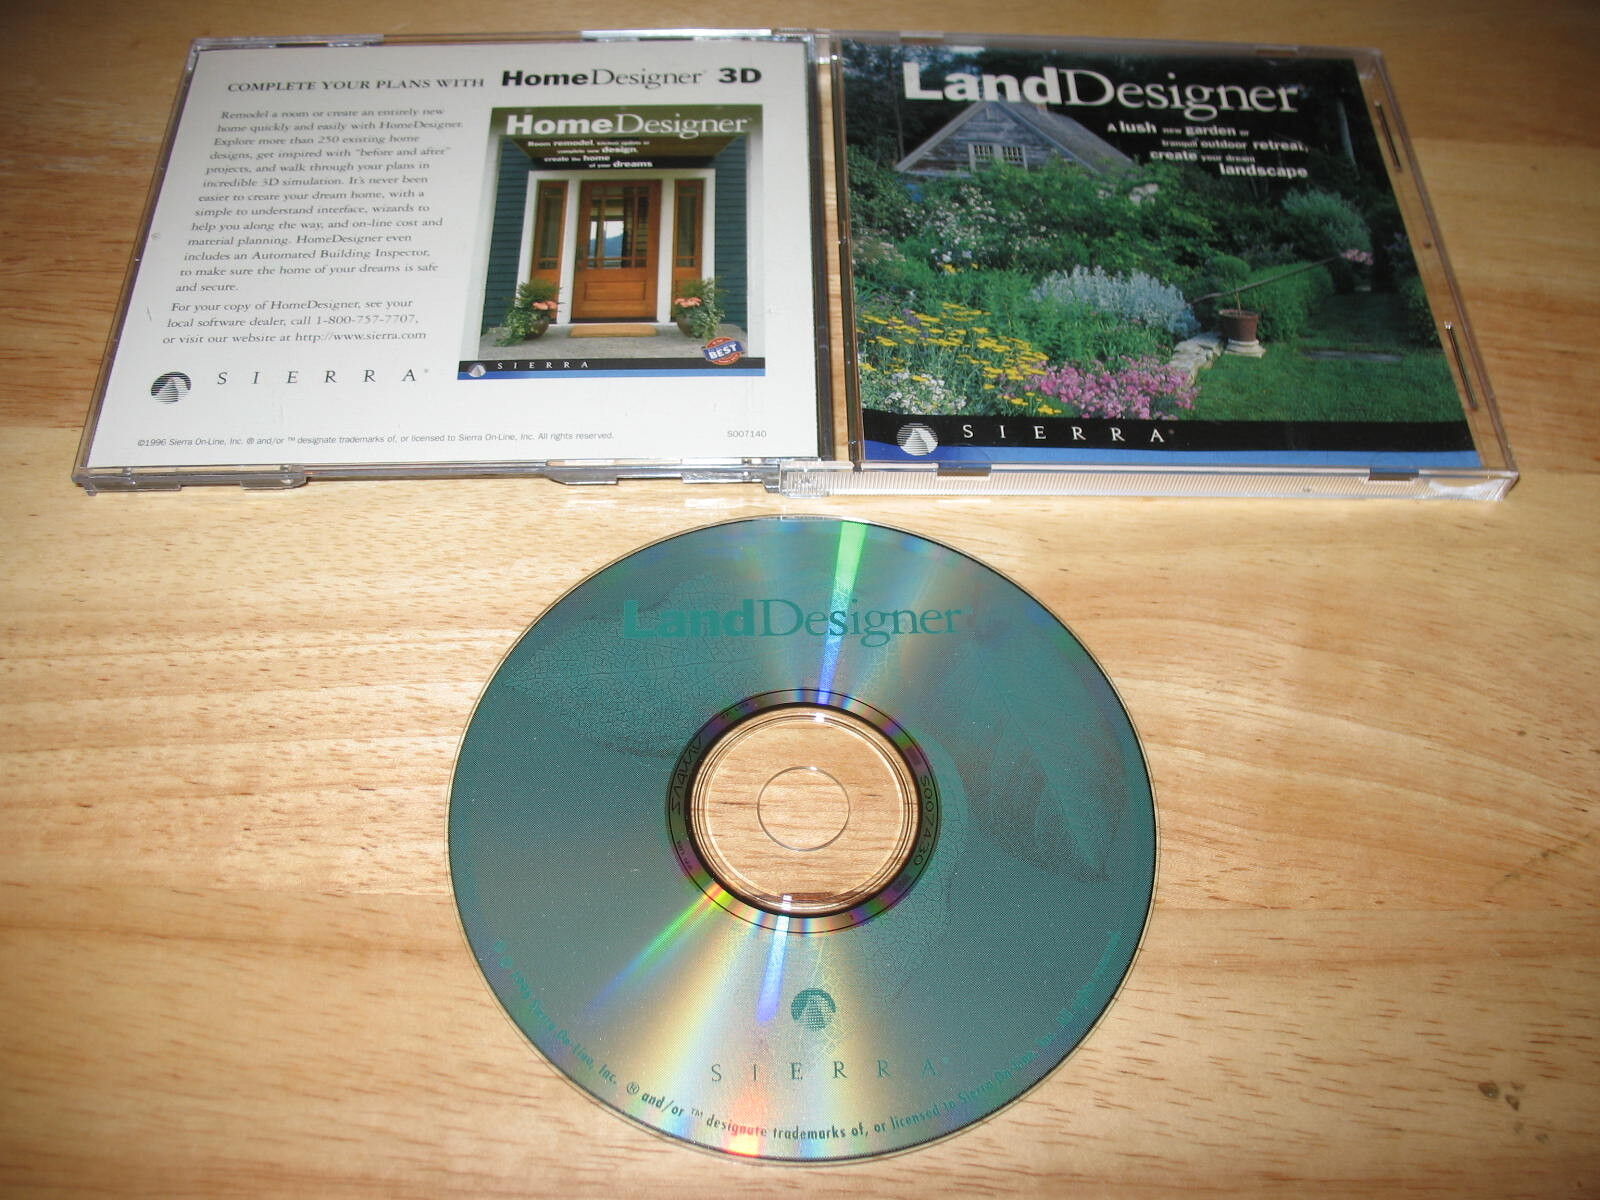 LandDesigner Version 4.0 PC CD-ROM Sierra 1996 for Windows 95/3.1